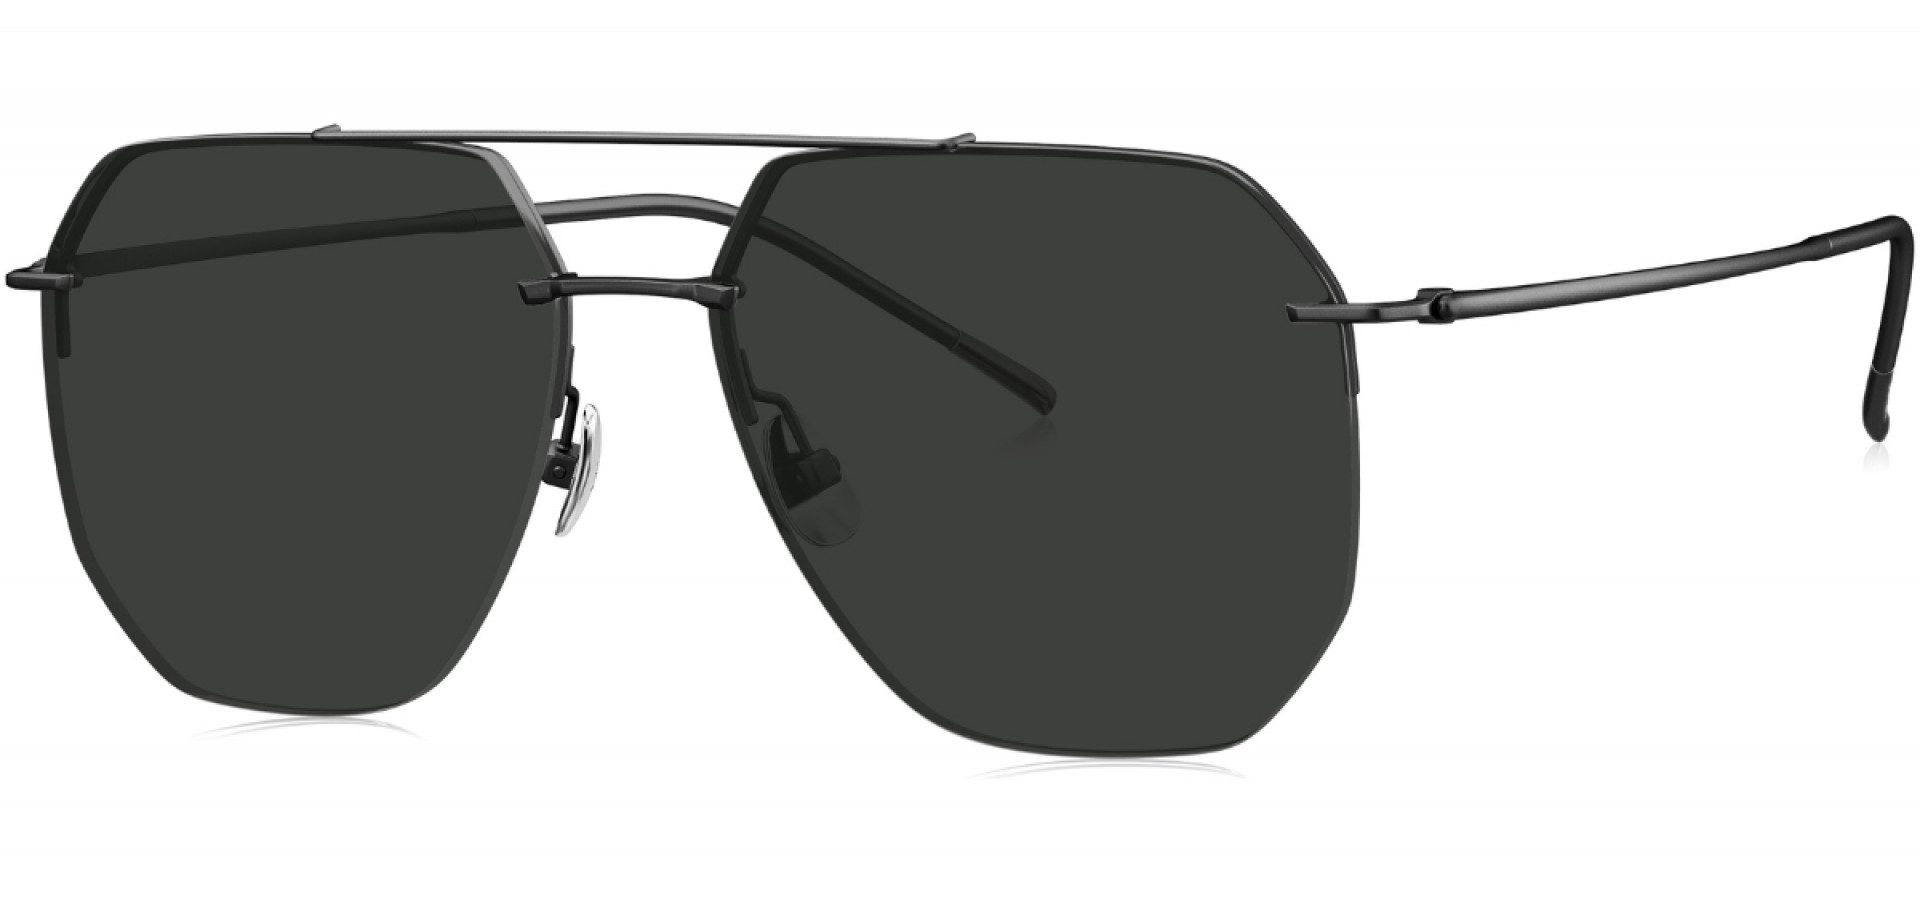 Sunčane naočale Bolon BV1025 59 C10: Boja: Black, Veličina: 59-15-148, Spol: muške, Materijal: titanij